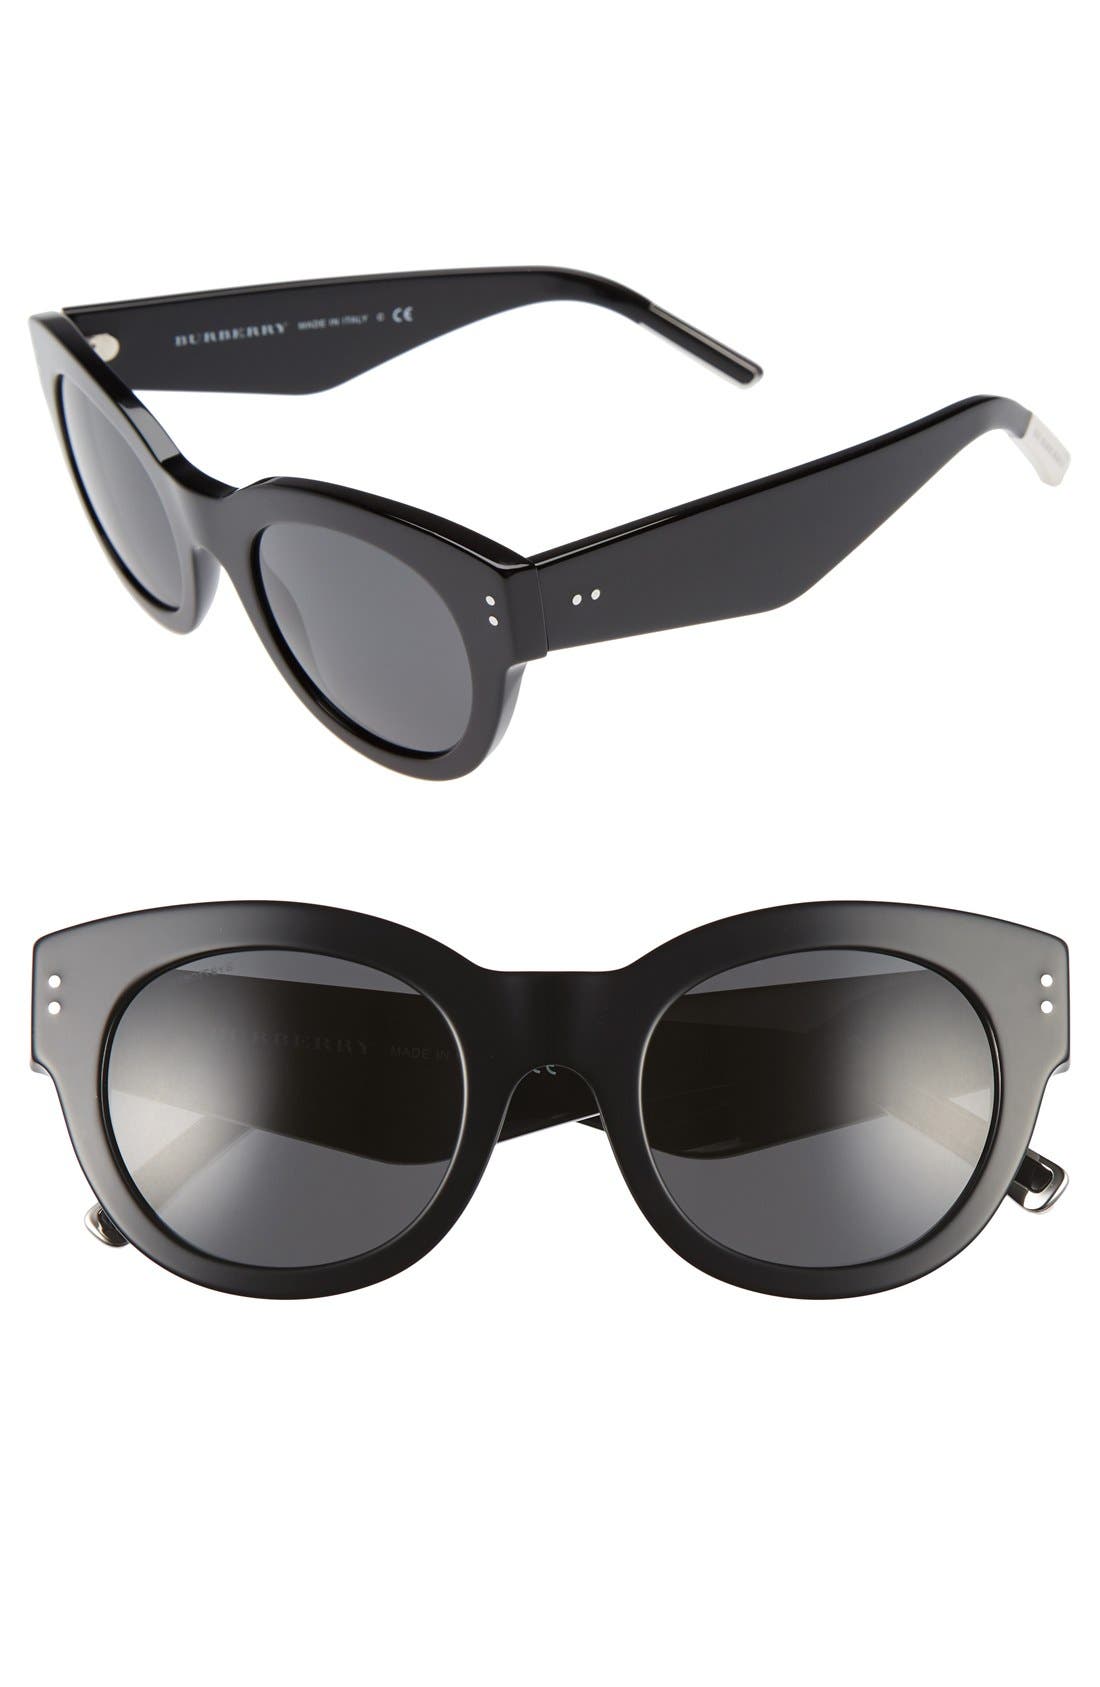 burberry retro sunglasses